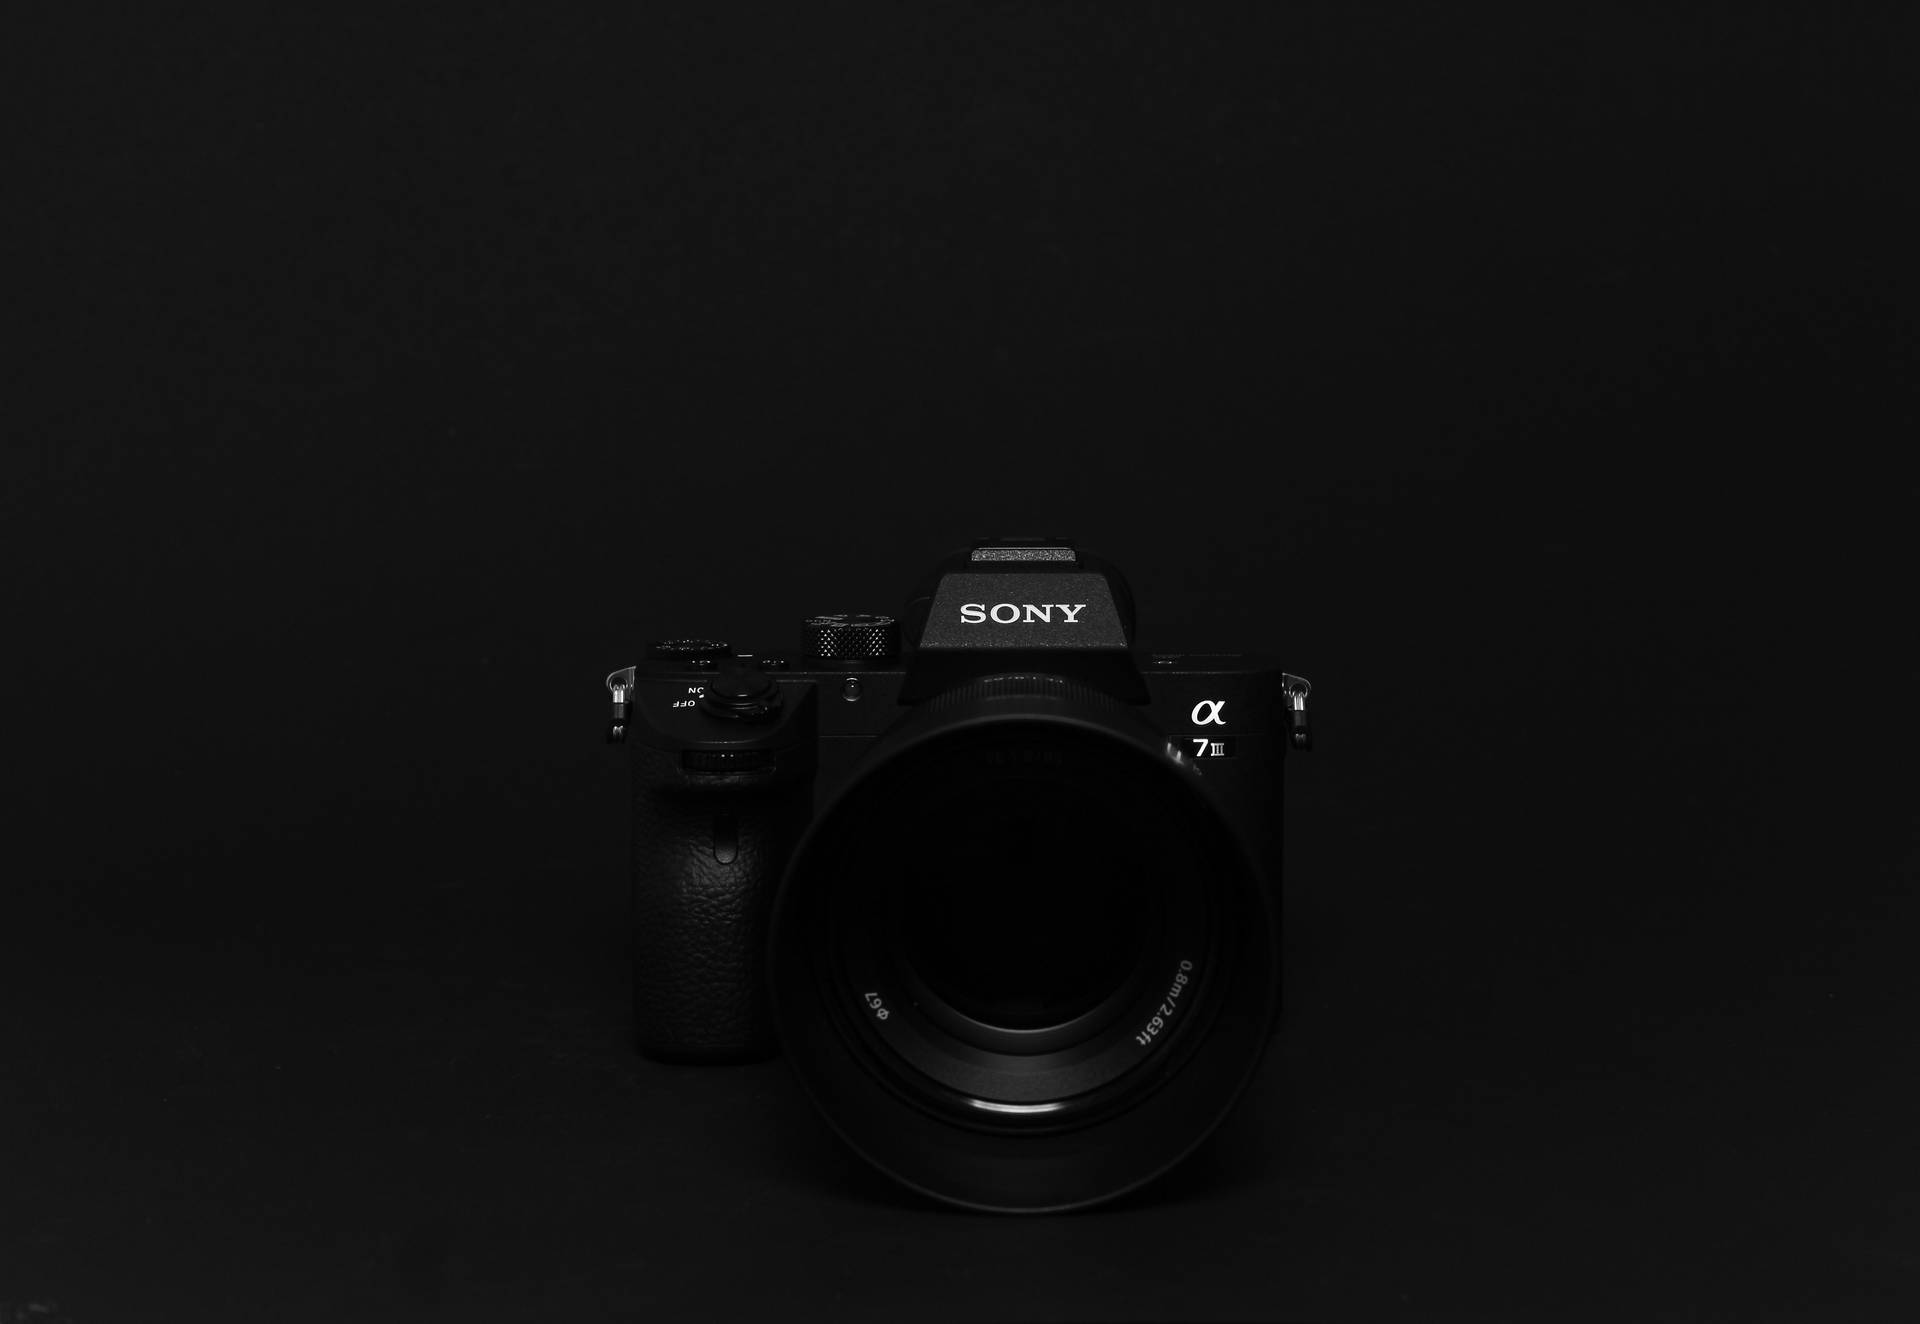 Sony Dslr Camera On Black Desktop Background